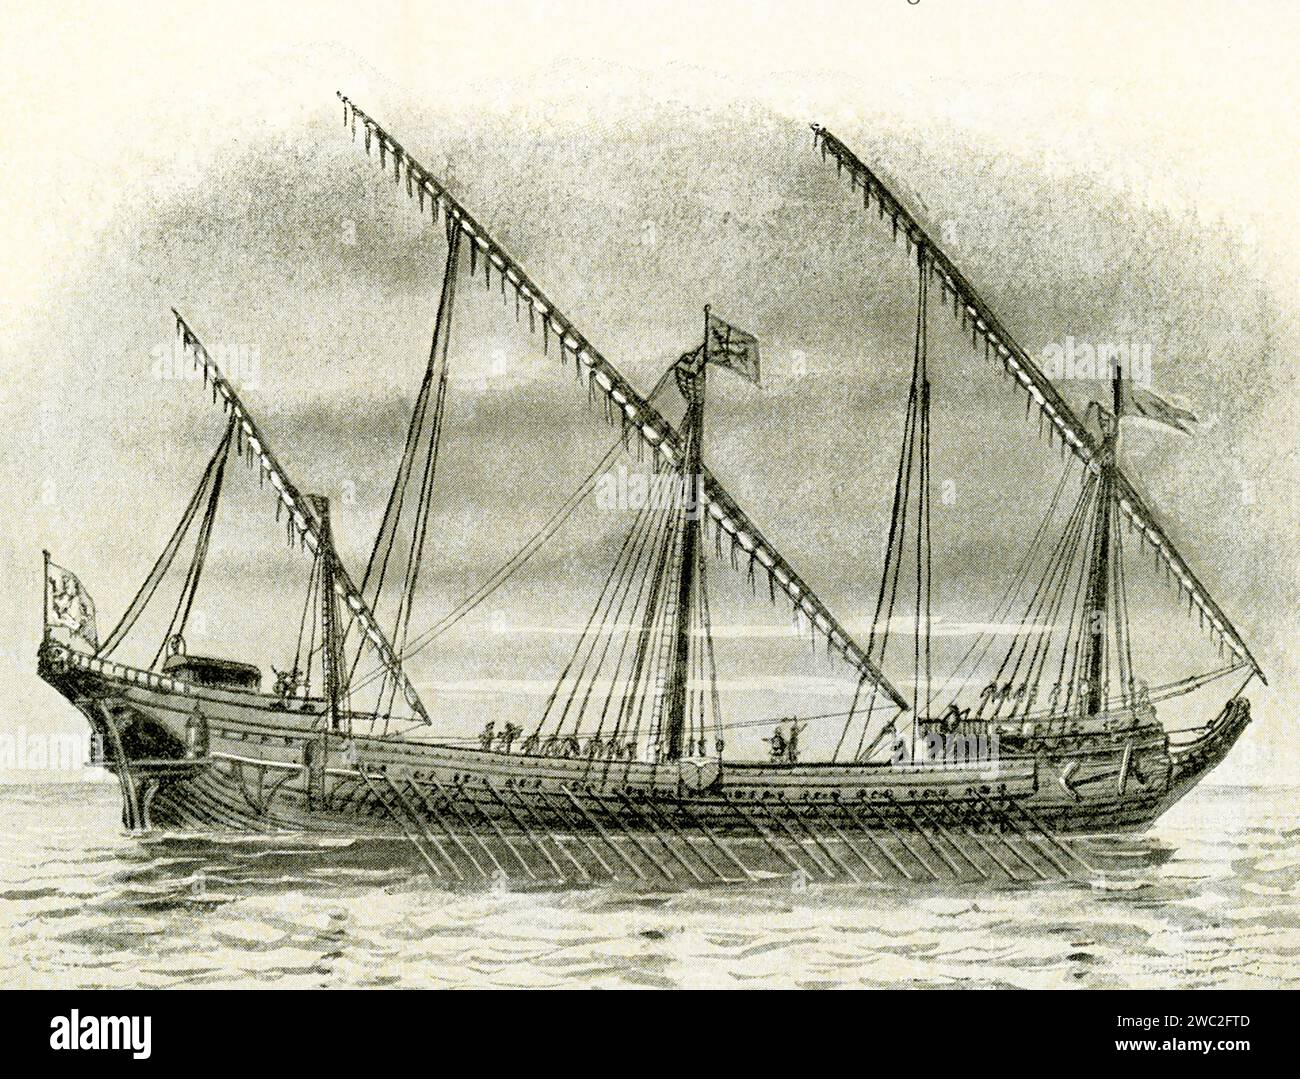 Galleass vénitien de la fin du 16e siècle - une grande galère rapide utilisée en particulier comme navire de guerre par les pays méditerranéens aux 16e et 17e siècles et ayant à la fois des voiles et des rames, mais généralement propulsée principalement par l'aviron. Banque D'Images